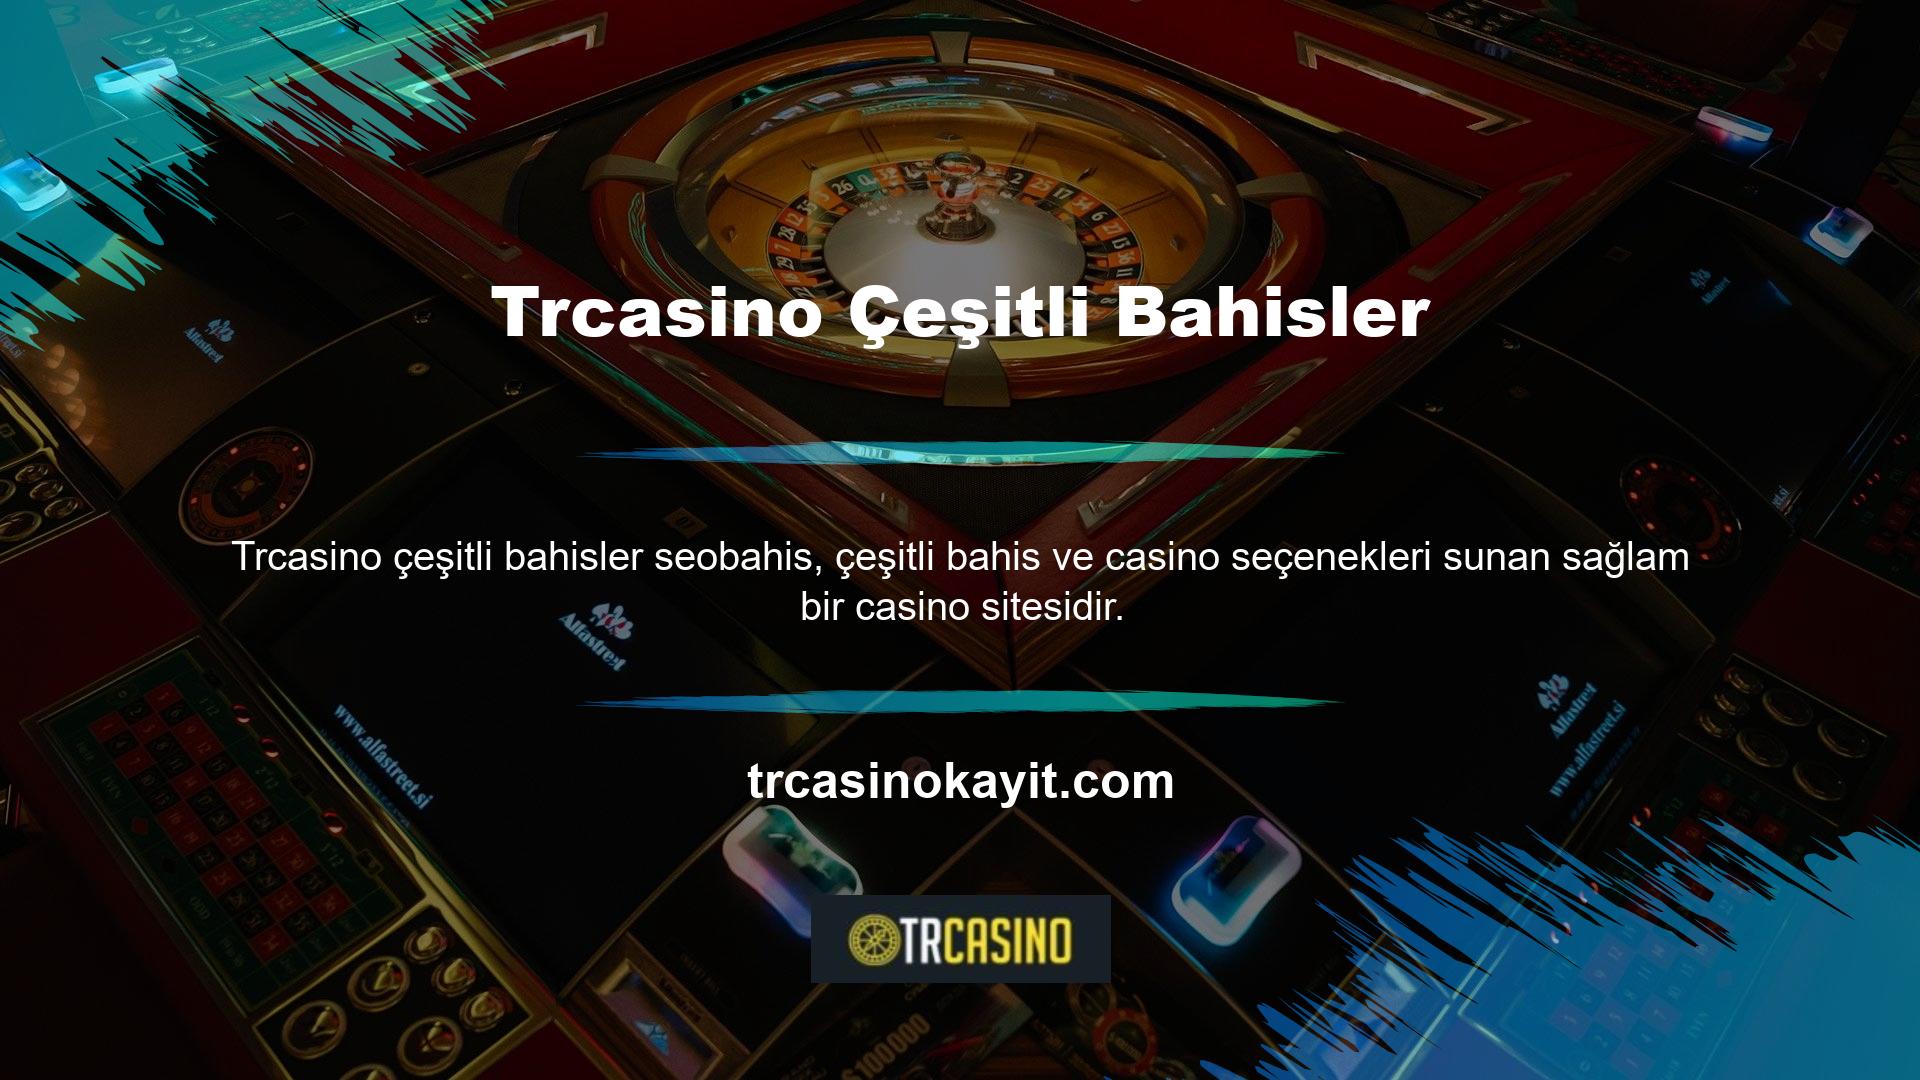 Trcasino, Türk yayıncılık sektörüne girdiğinden beri birçok oyuncuyu kendine çekmeyi hedeflemektedir ve Trcasino, casino ve çeşitli bahisler alanında aktif bir web sitesidir